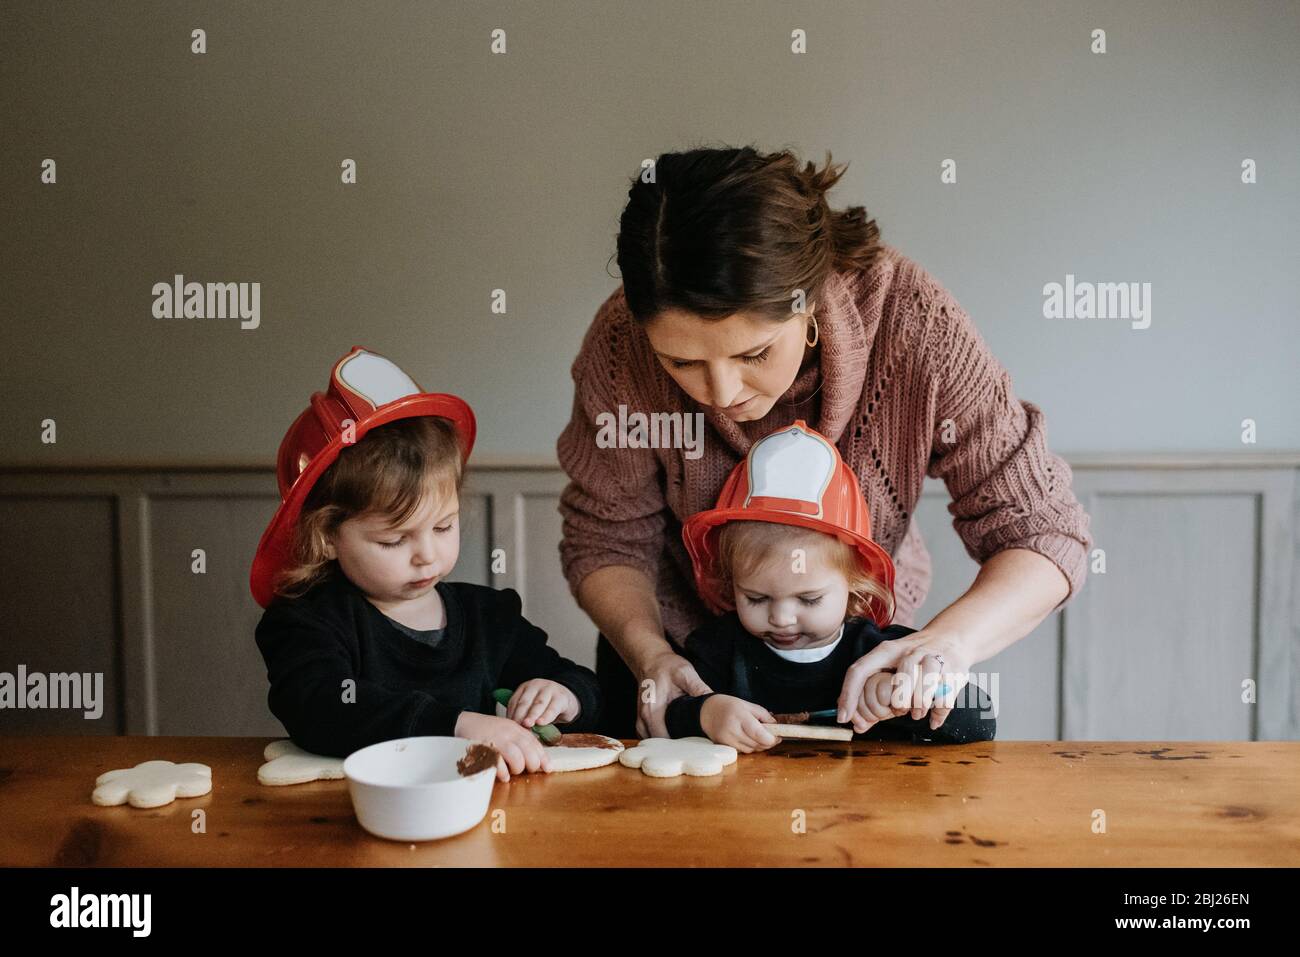 Eine Mutter hilft ihren beiden Kindern, Kekse mit Schokolade zu dekorieren. Stockfoto